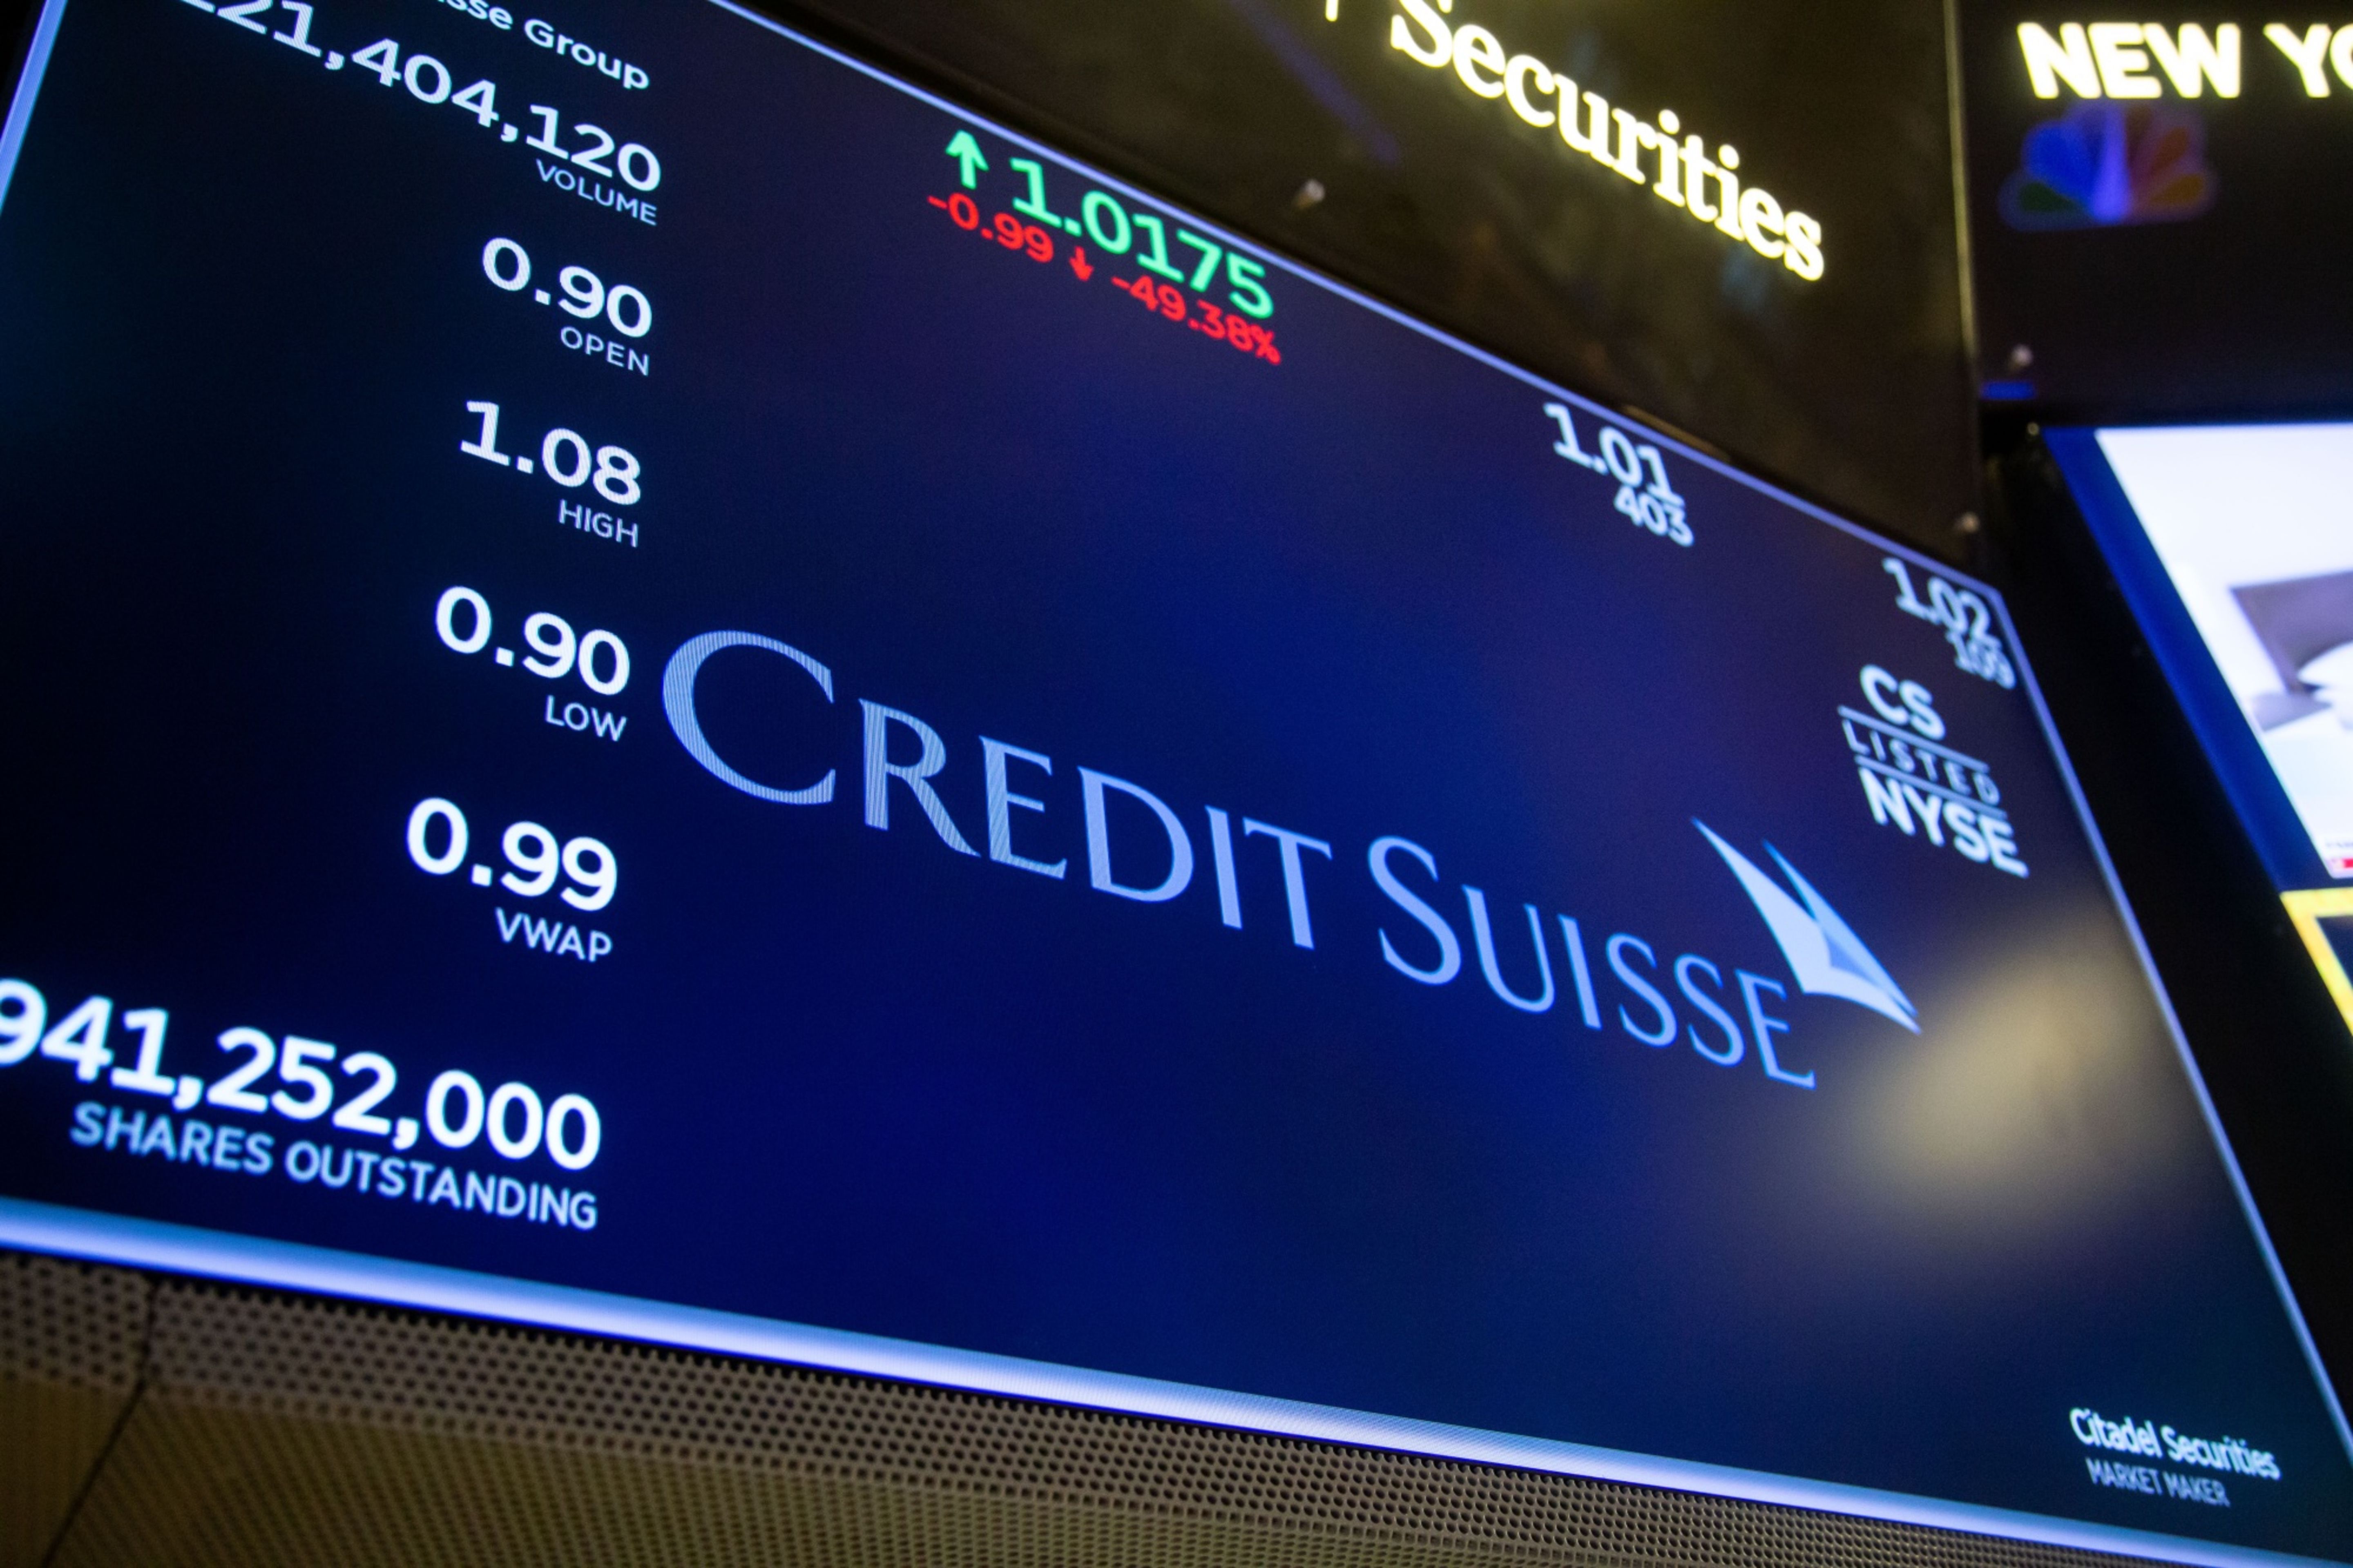 Banqueiros do Credit Suisse lutam para manter empregos no UBS, dizem fontes, Empresas